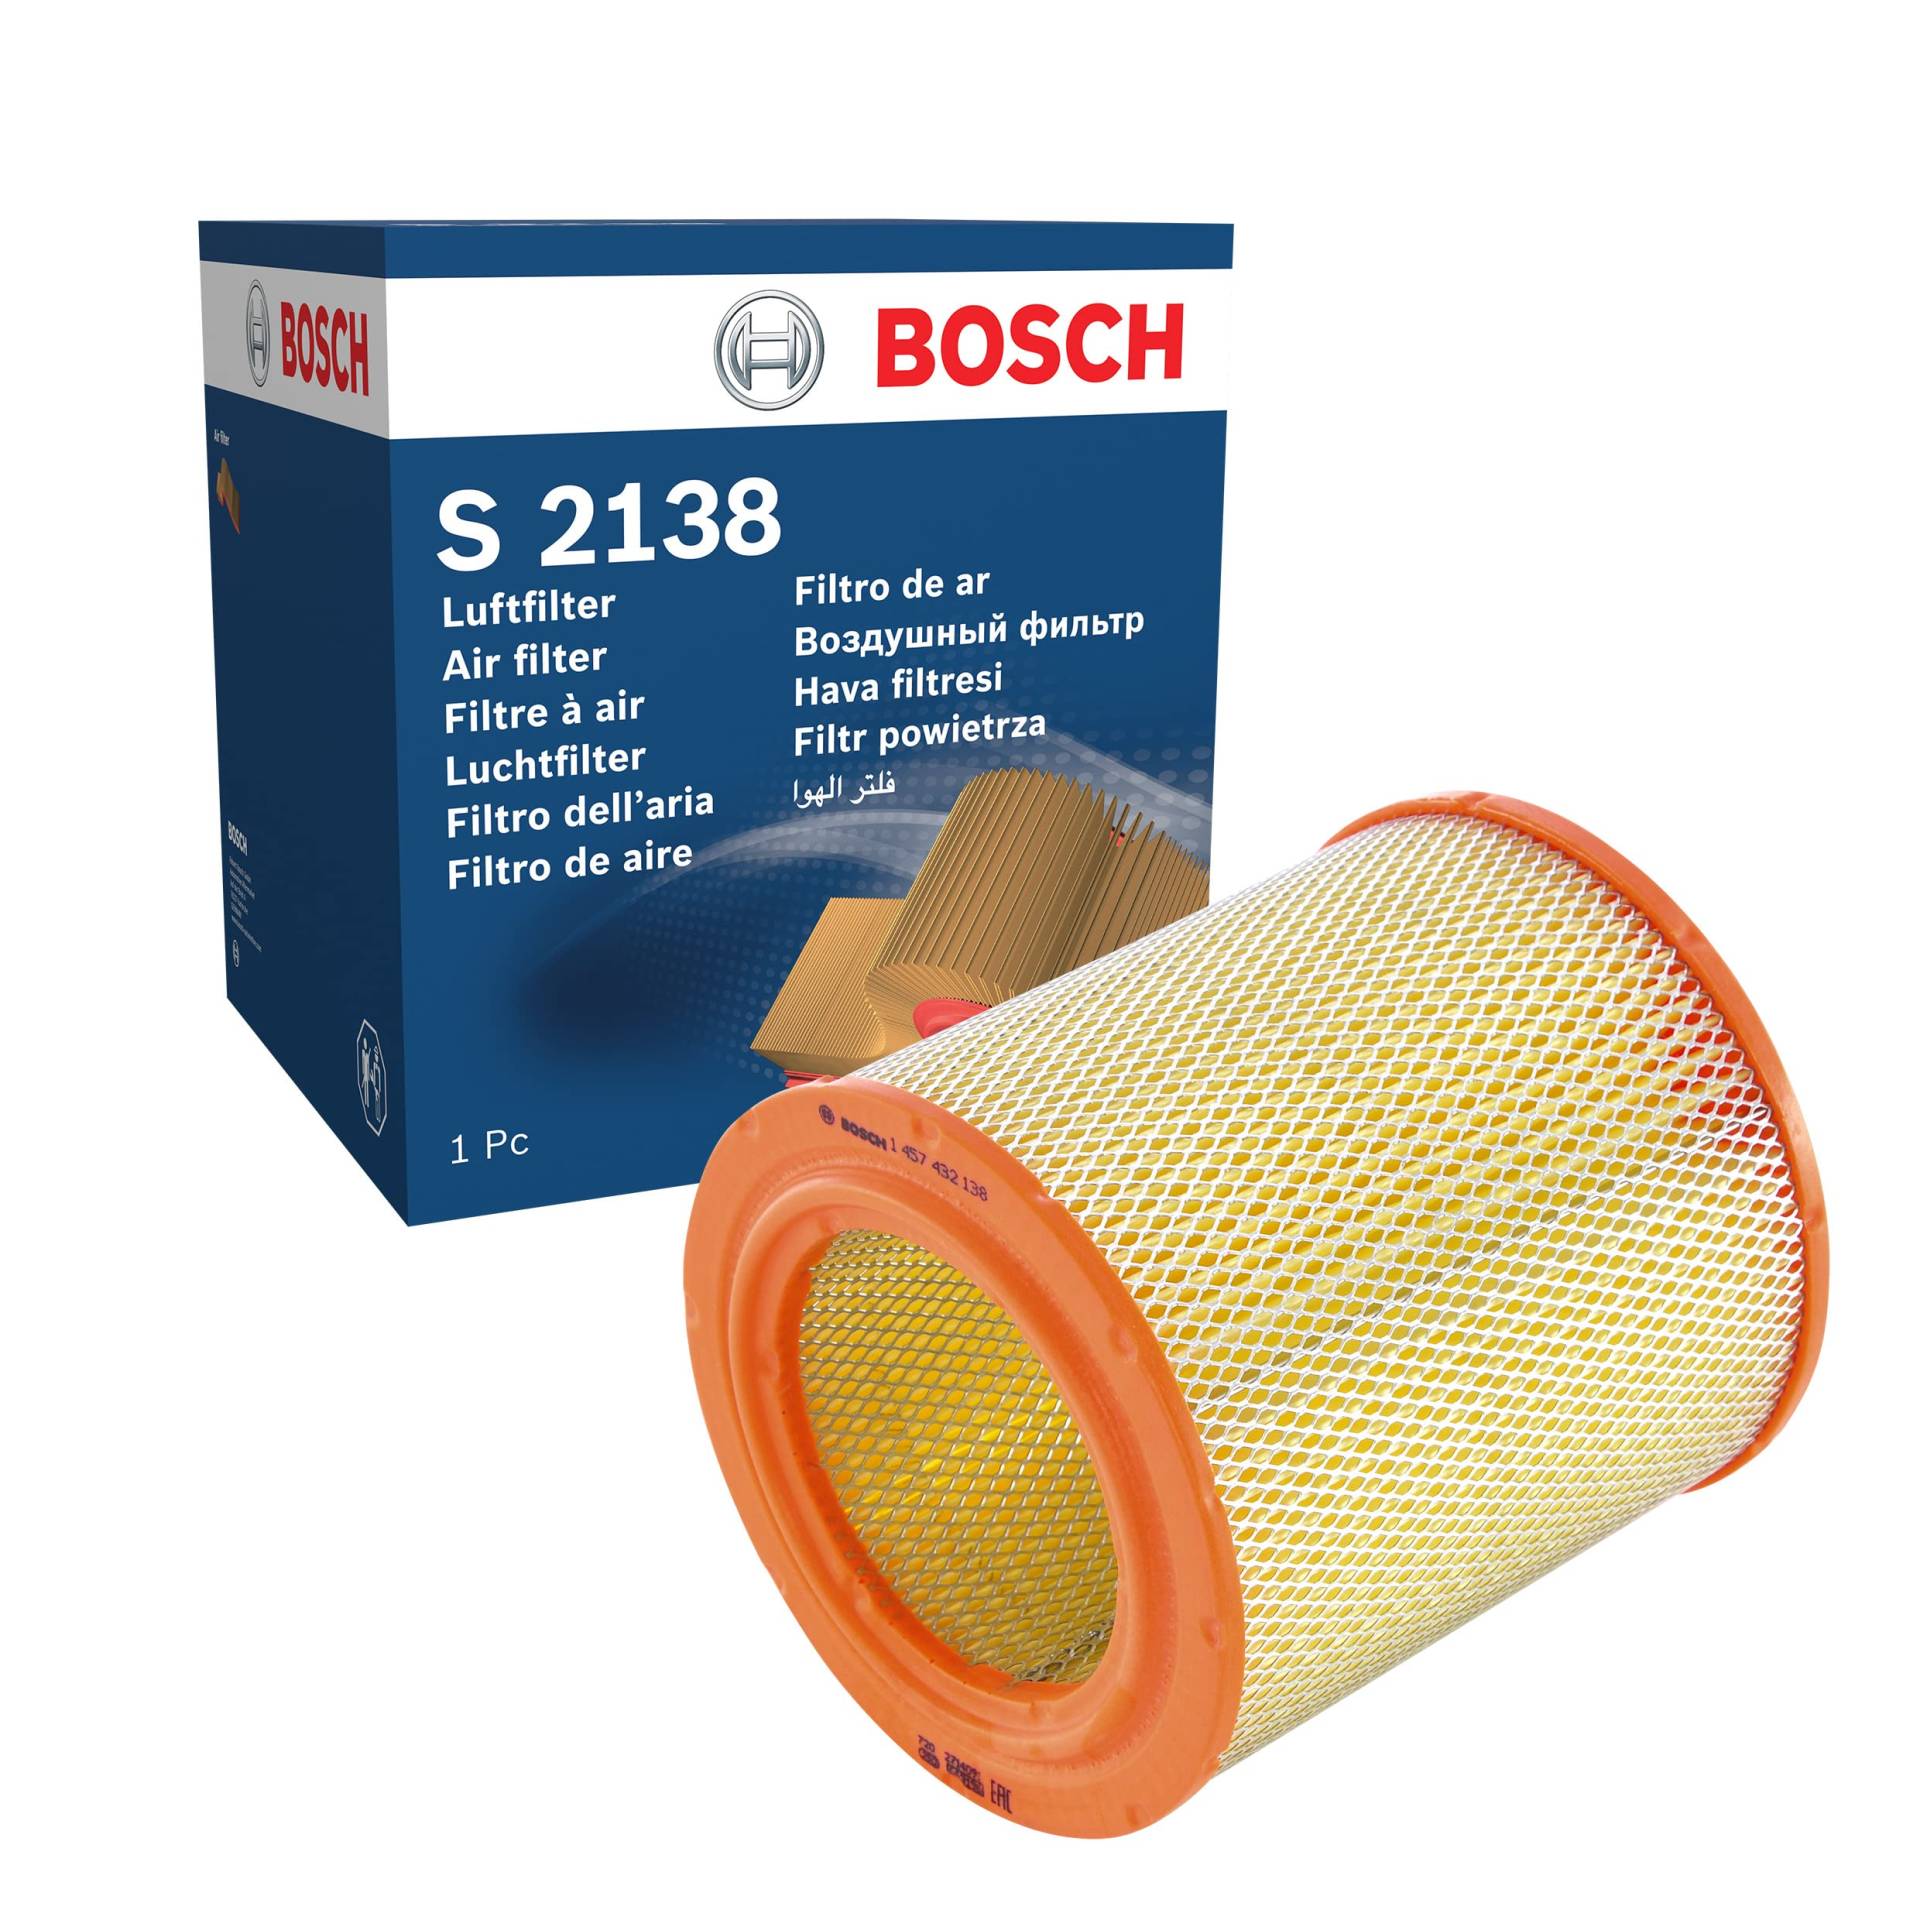 Bosch S2138 - Luftfilter Auto von Bosch Automotive